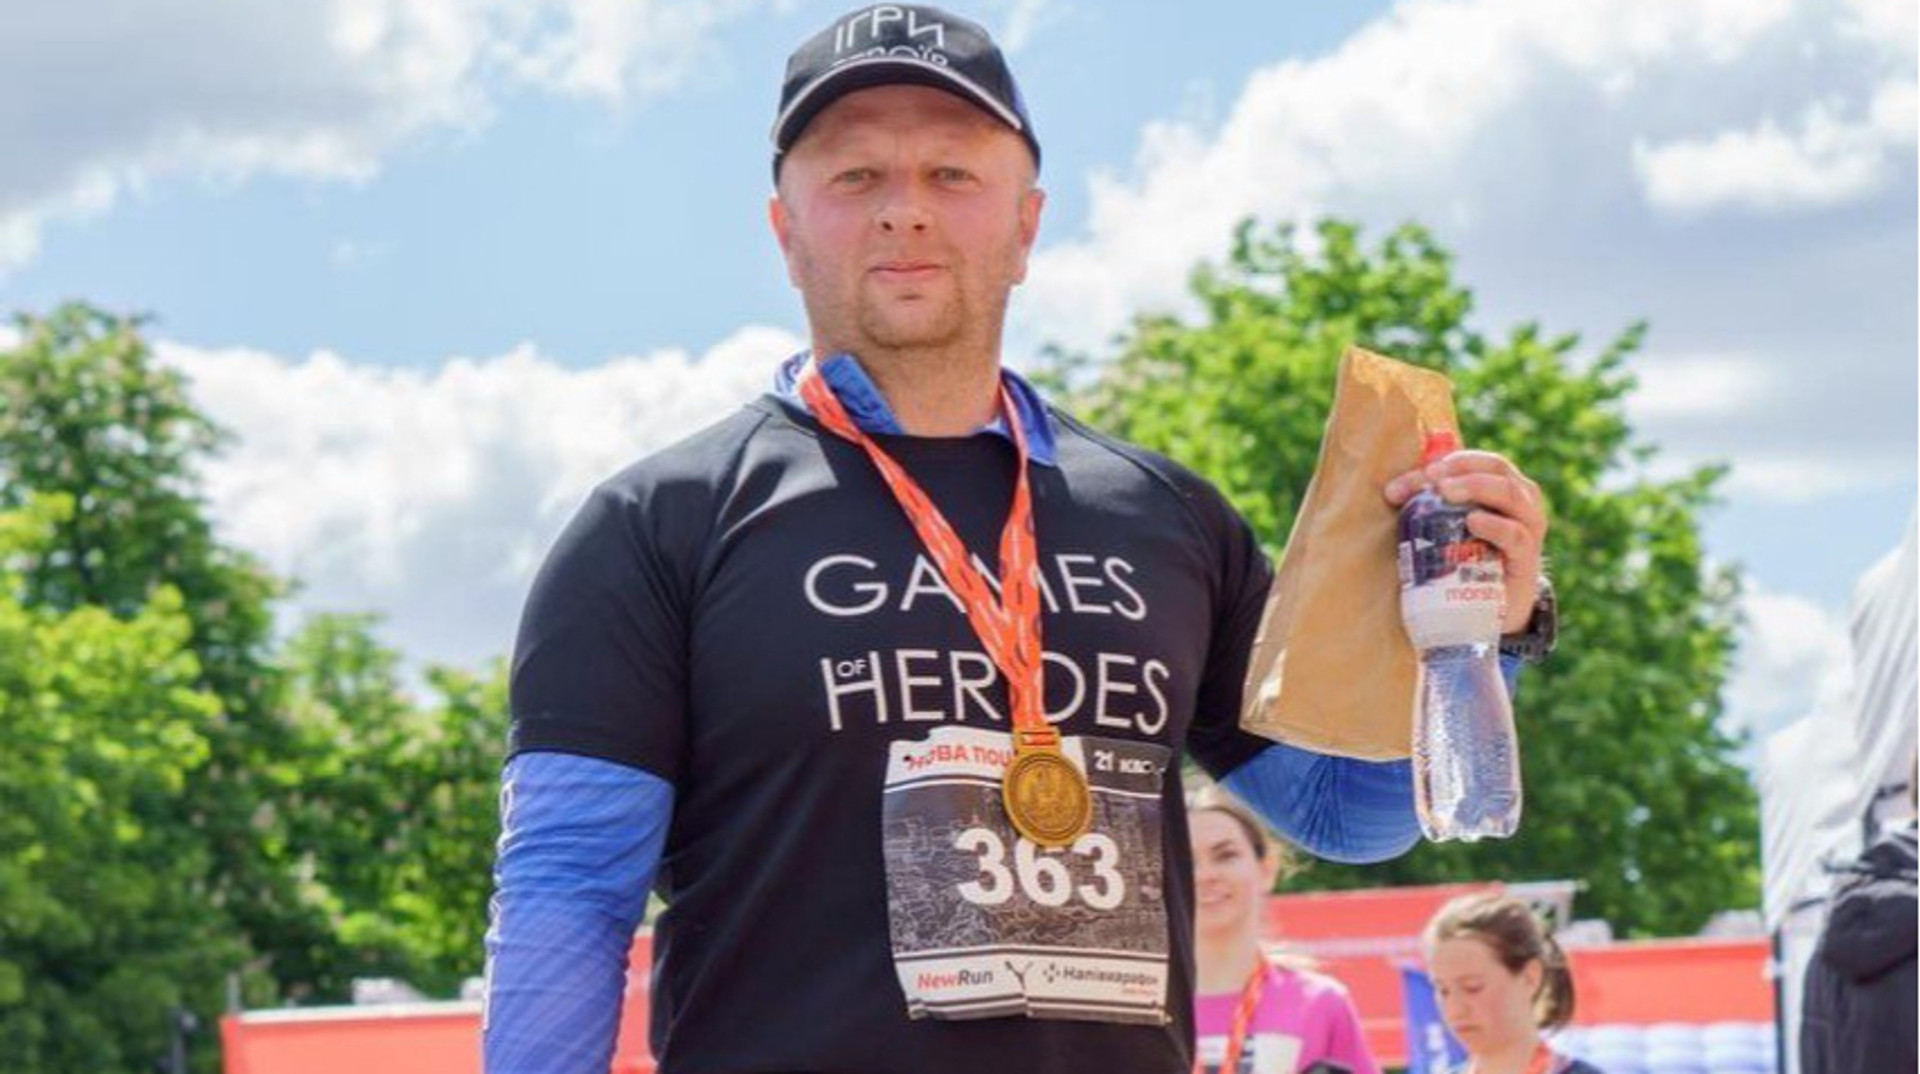 Історія ветерана, який зміг. Юрій Козловський та його шлях від ампутації до марафону 42 км